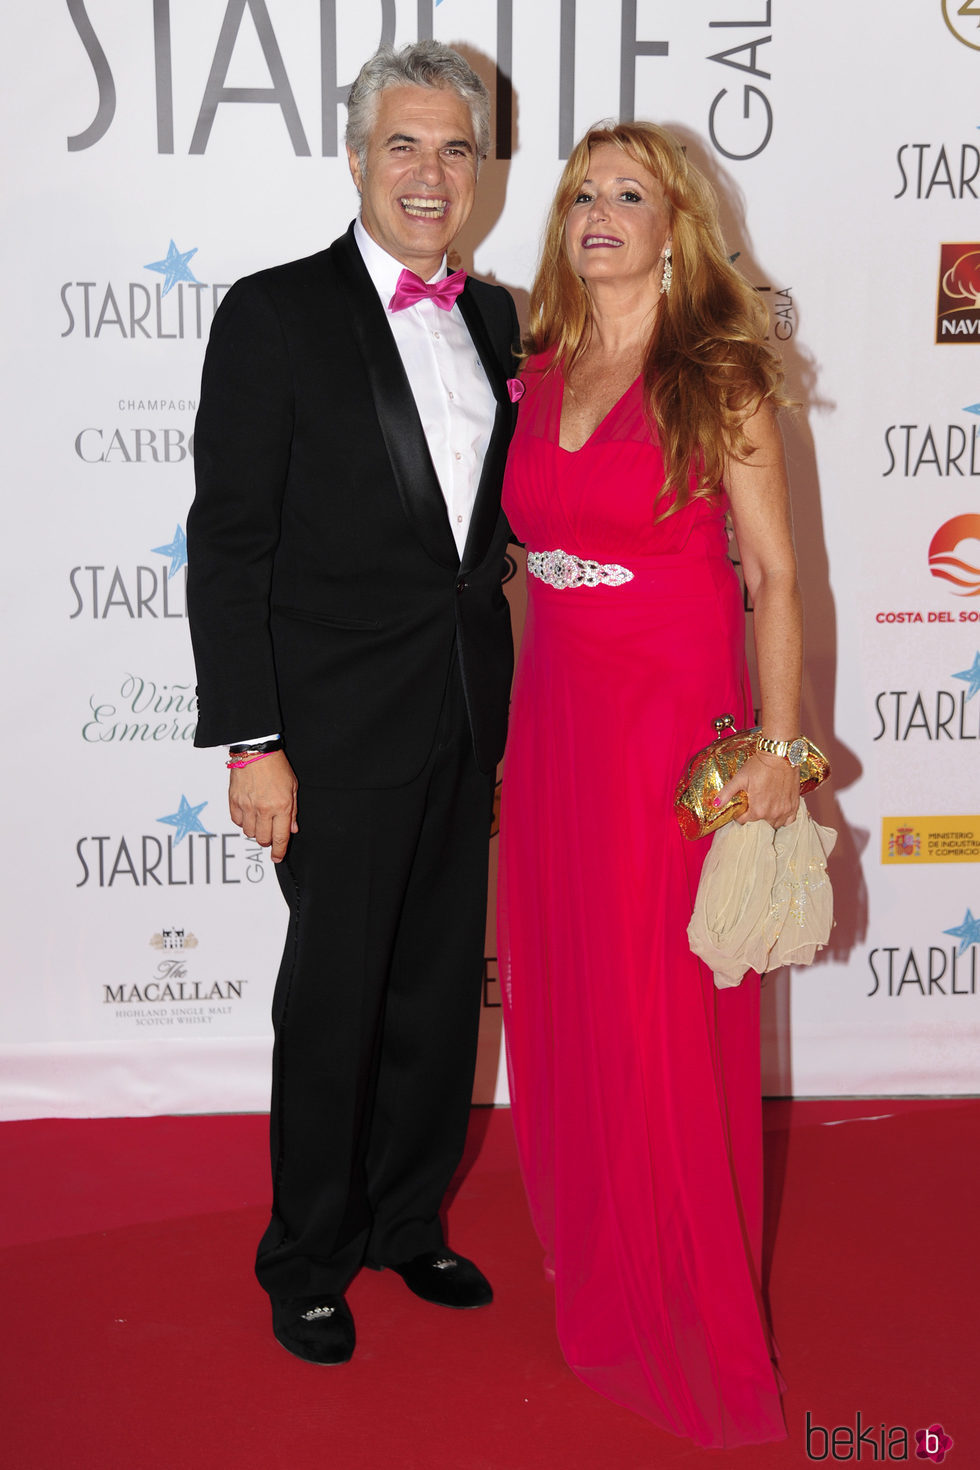 Agustín Bravo y su pareja en la Gala Starlite 2017 en Marbella